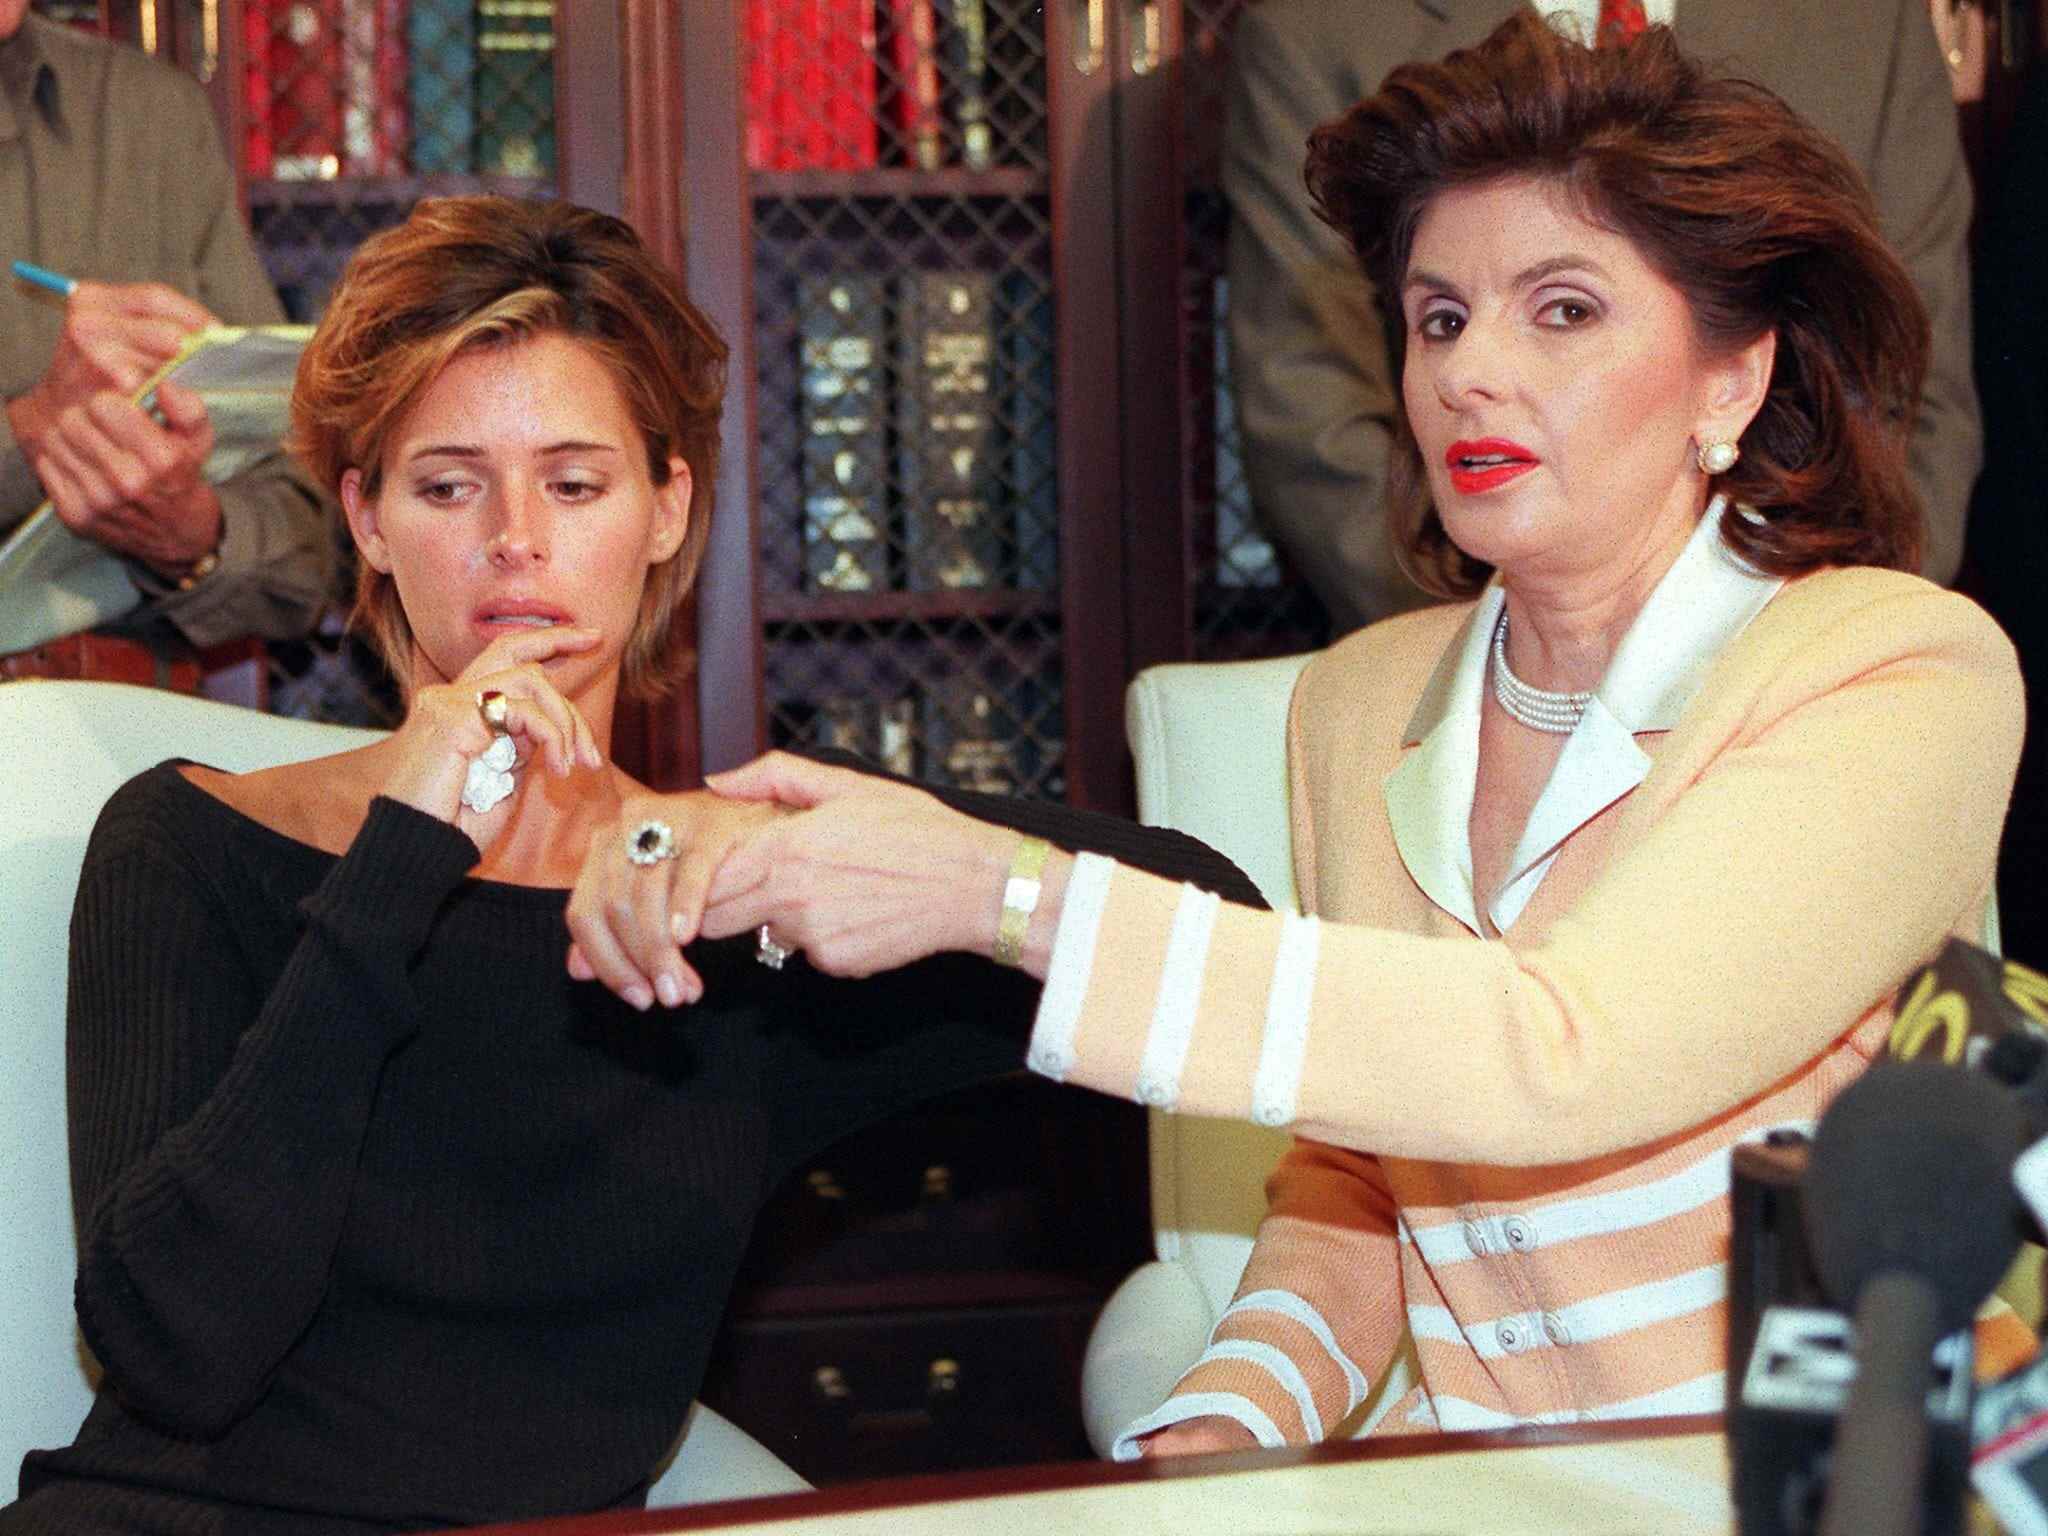 LOS ANGELES, VEREINIGTE STAATEN: US-Model Kelly Fisher, 31, (L) und ihre Anwältin Gloria Allred zeigen den großen Saphir- und Diamant-Verlobungsring, den ihr die ehemalige ägyptische Verlobte Dodi al-Fayed geschenkt hat.  Sie gaben während einer Pressekonferenz am 14. August in Los Angeles die Einreichung einer Vertragsverletzungsklage gegen al-Fayed bekannt.  Dodi al-Fayed wurde nach der Veröffentlichung eines Fotos von Diana mit ihm mit Prinzessin Diana in Verbindung gebracht.  Fisher gab ihre Modelkarriere in Erwartung ihrer bevorstehenden Ehe mit dem Ägypter auf.  AFP PHOTO/ KIM KULISH (Bildnachweis sollte KIM KULISH/AFP via Getty Images lauten)